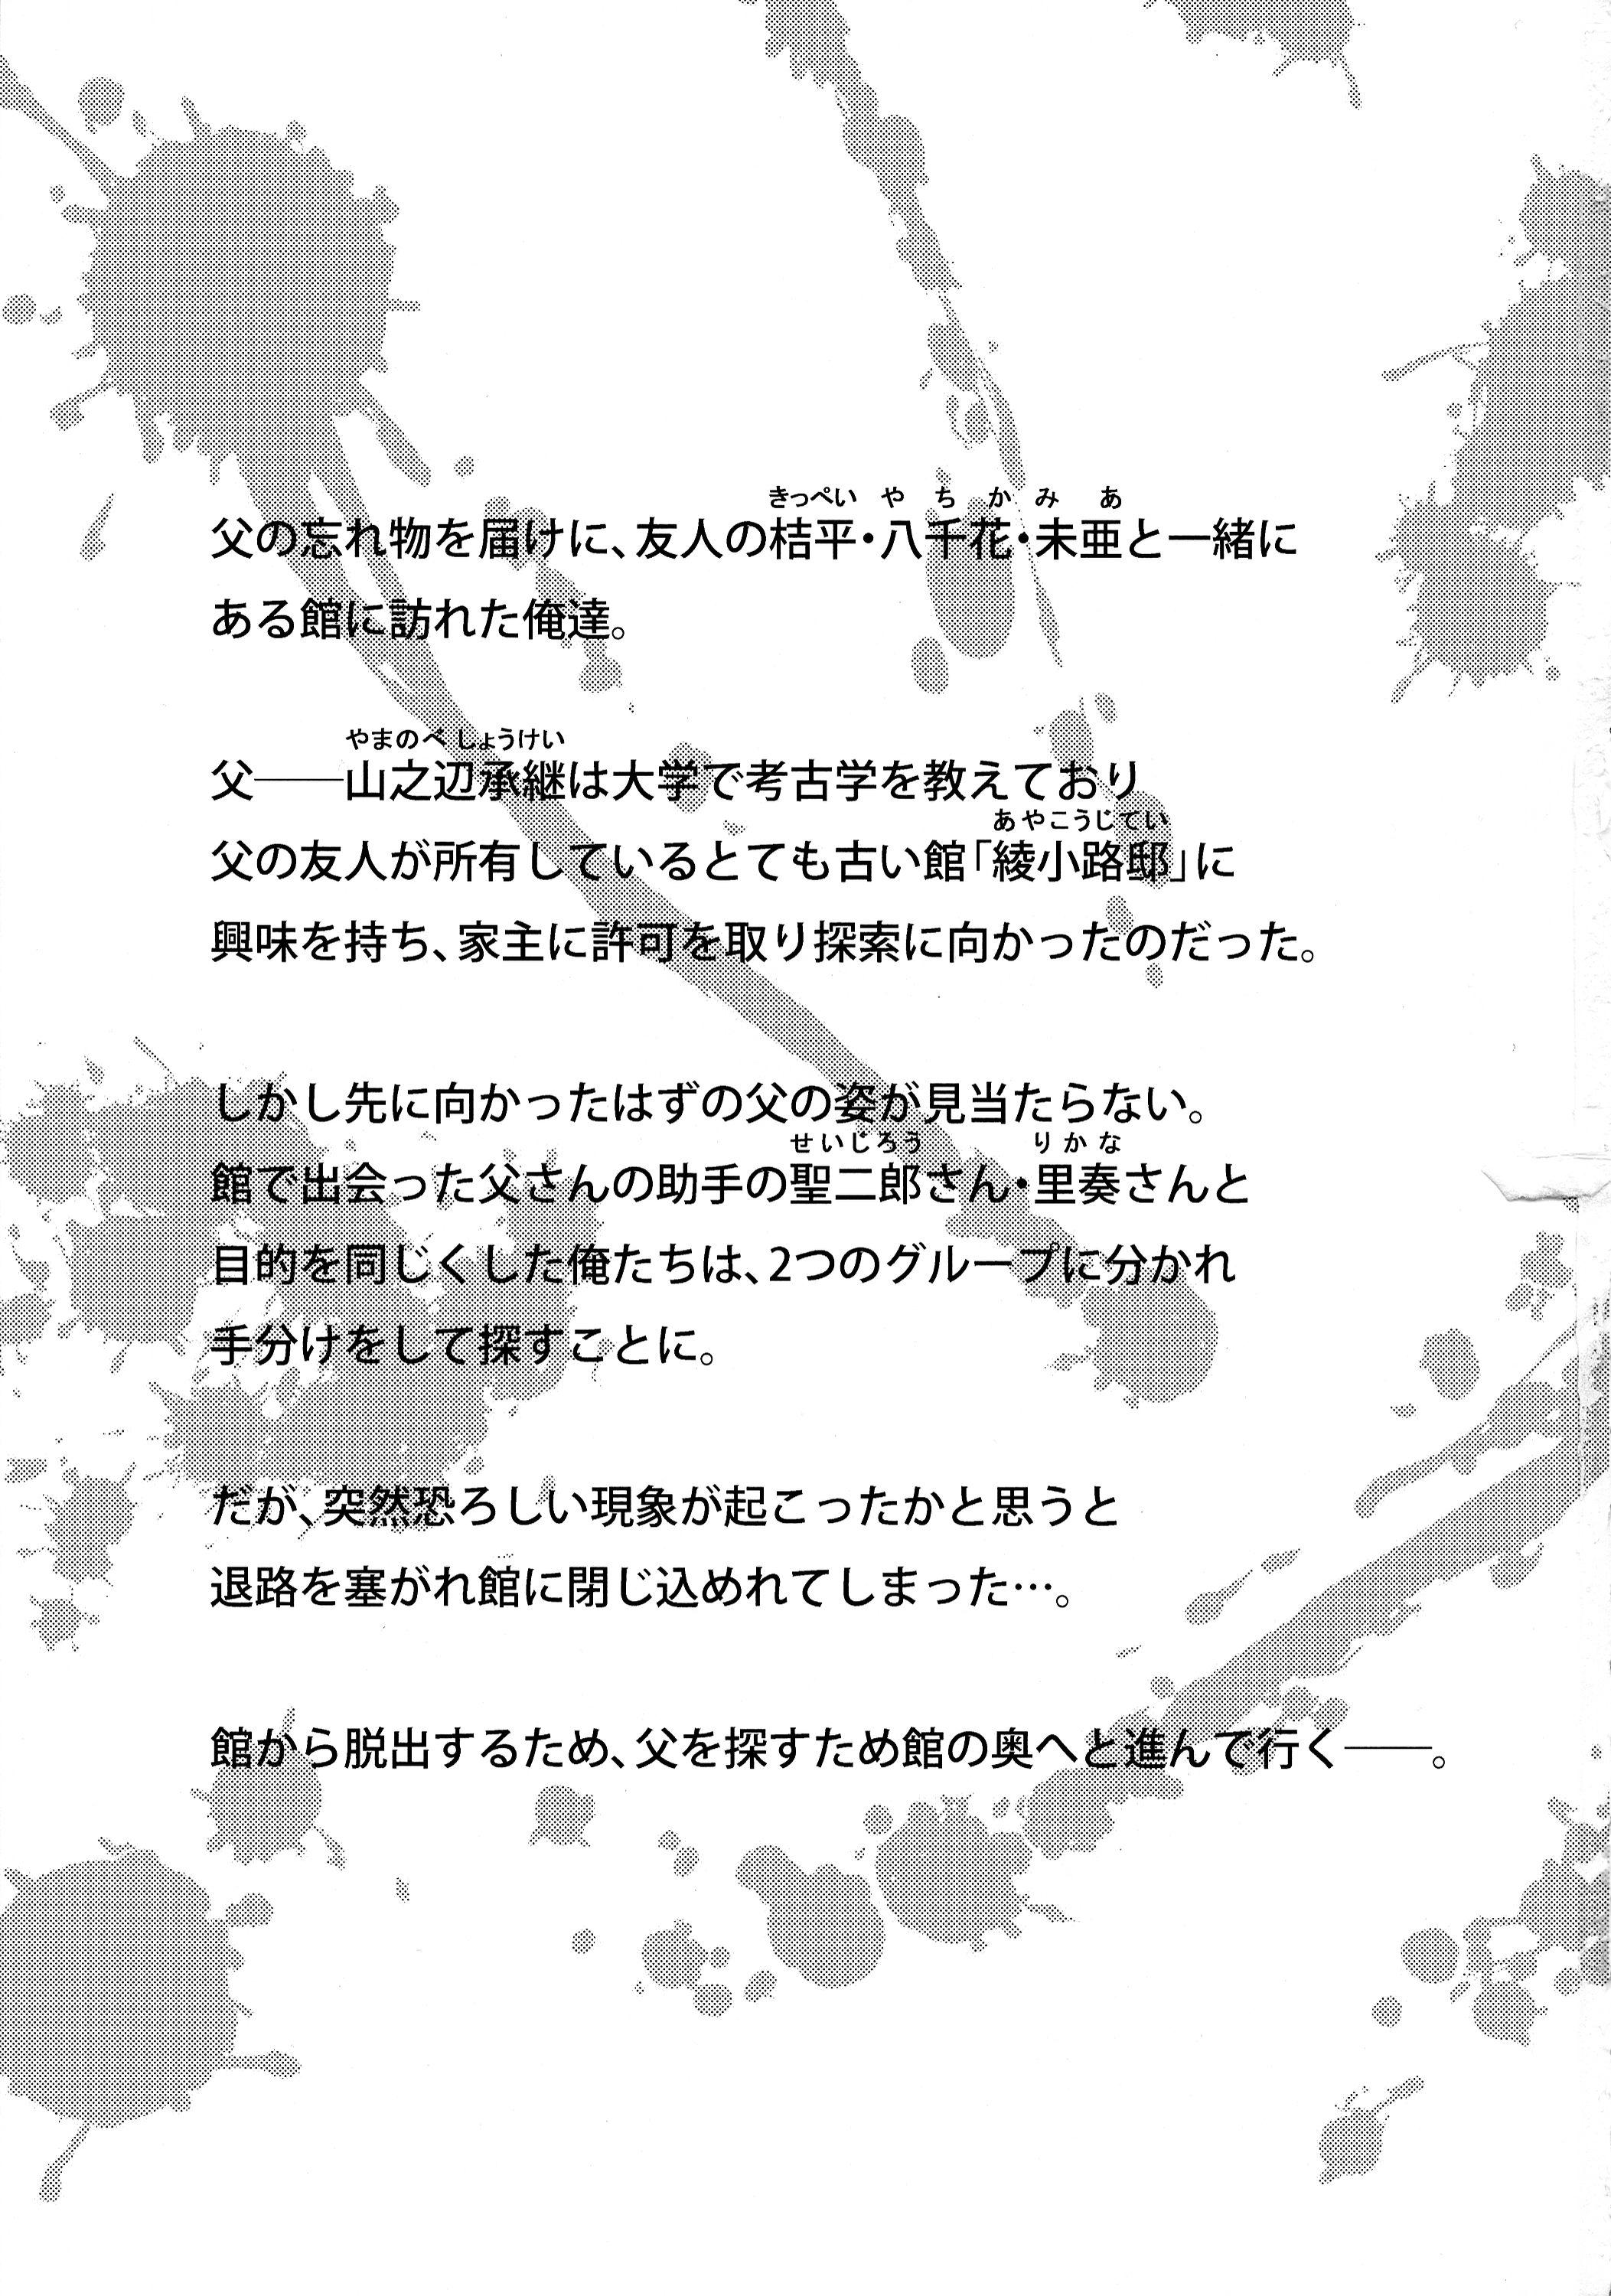 Coroa Futanari ni Naru Kanojo no Aventure - Fukai ni nemuru oujo no abaddon Playing - Page 3